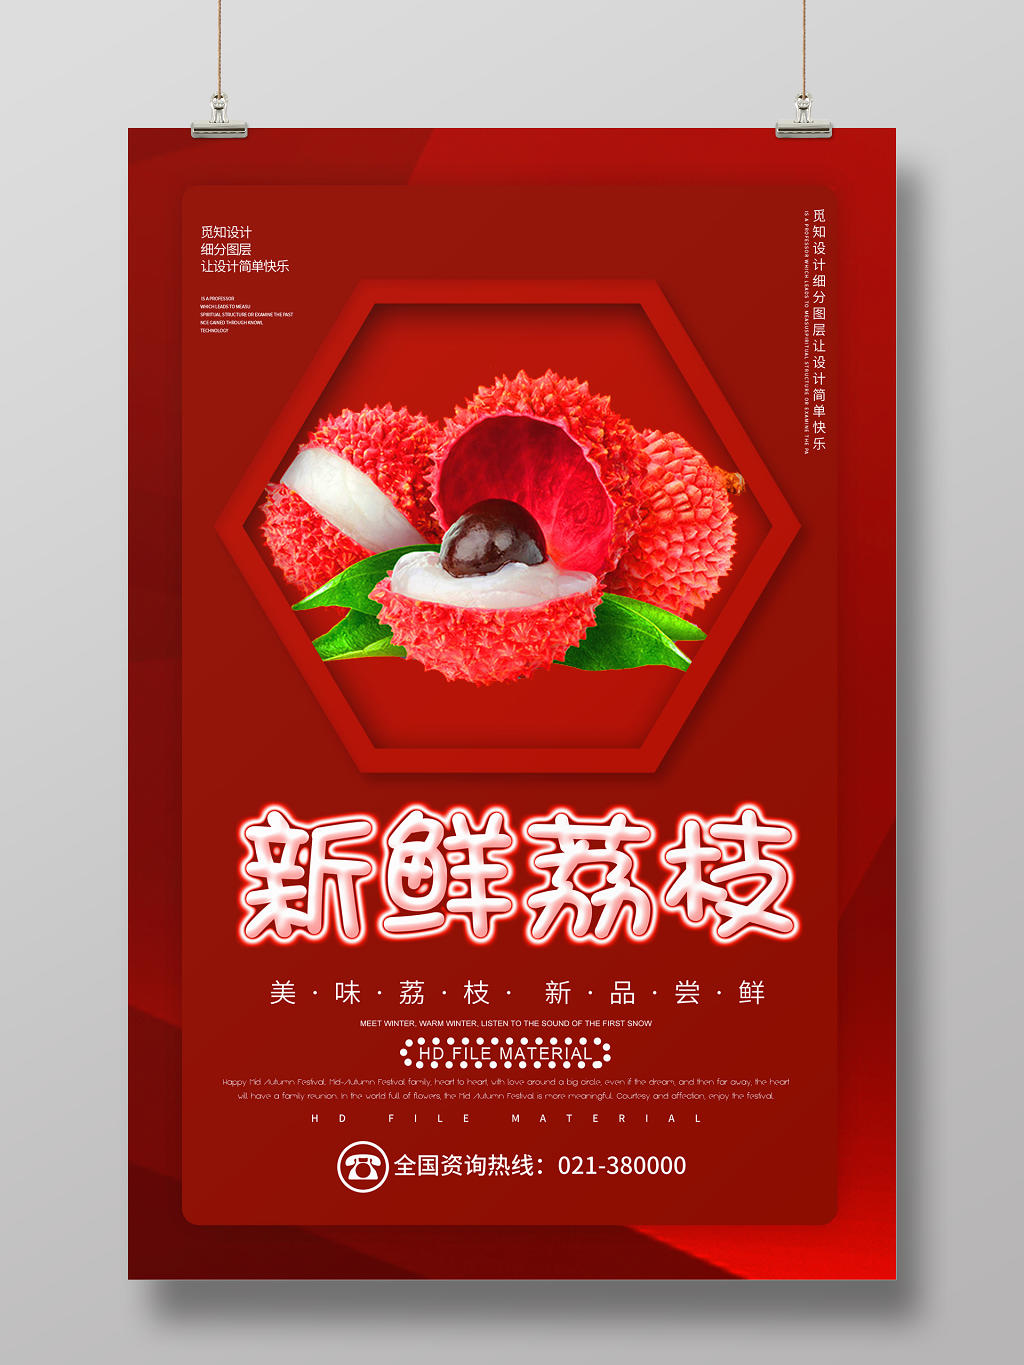 水果新鲜荔枝美味新品尝鲜红色宣传海报设计水果荔枝